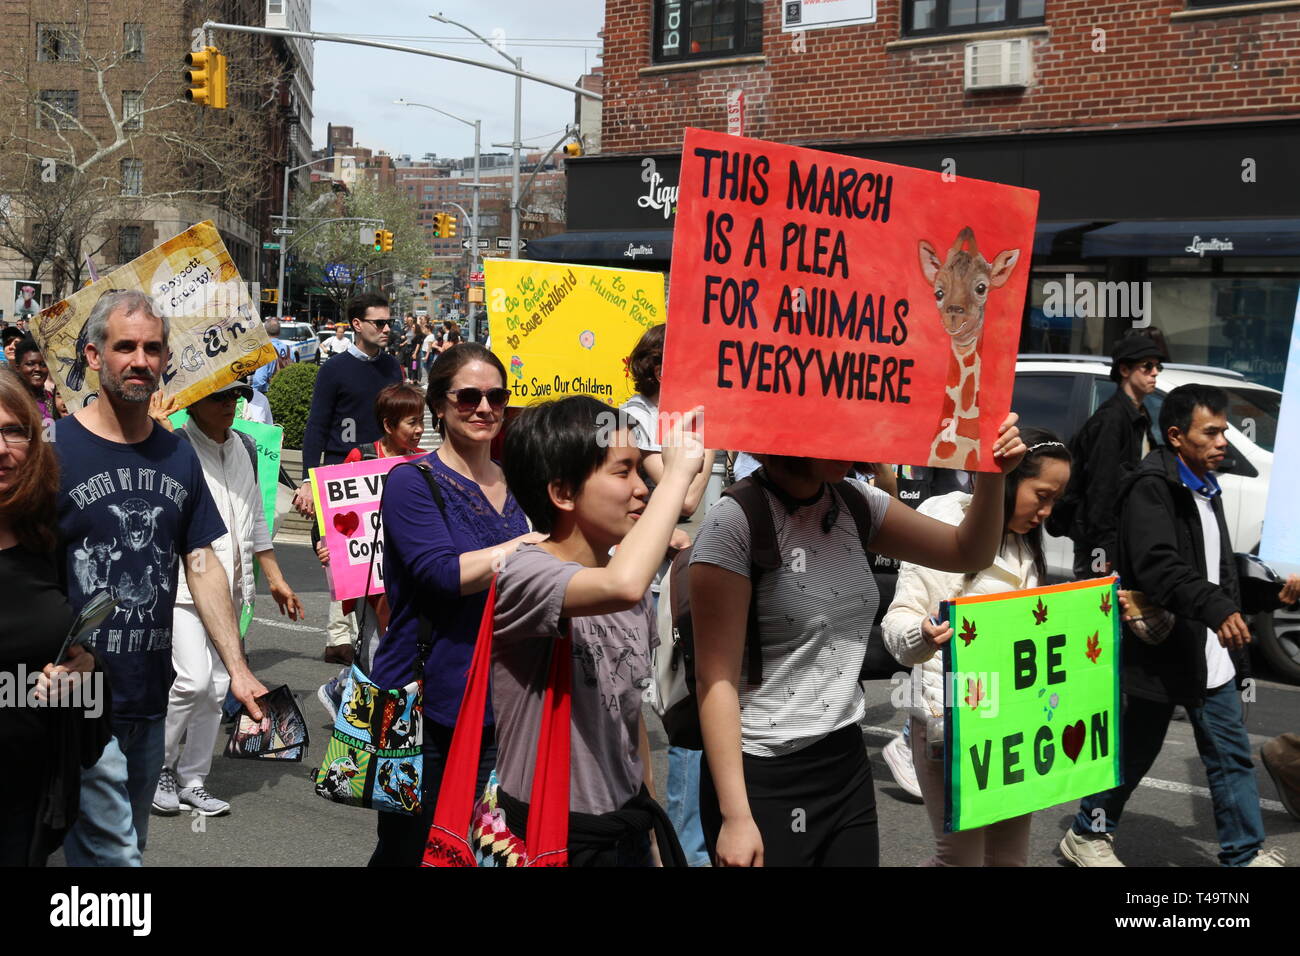 Menschen gesehen Plakate zu anderen veganen während der jährlichen Veggie Pride Parade zu fördern. Die Parade feiert Veganismus und Übungen die erste änderung Rechte derjenigen, die Gewalt gegen andere Tiere ablehnen. Stockfoto